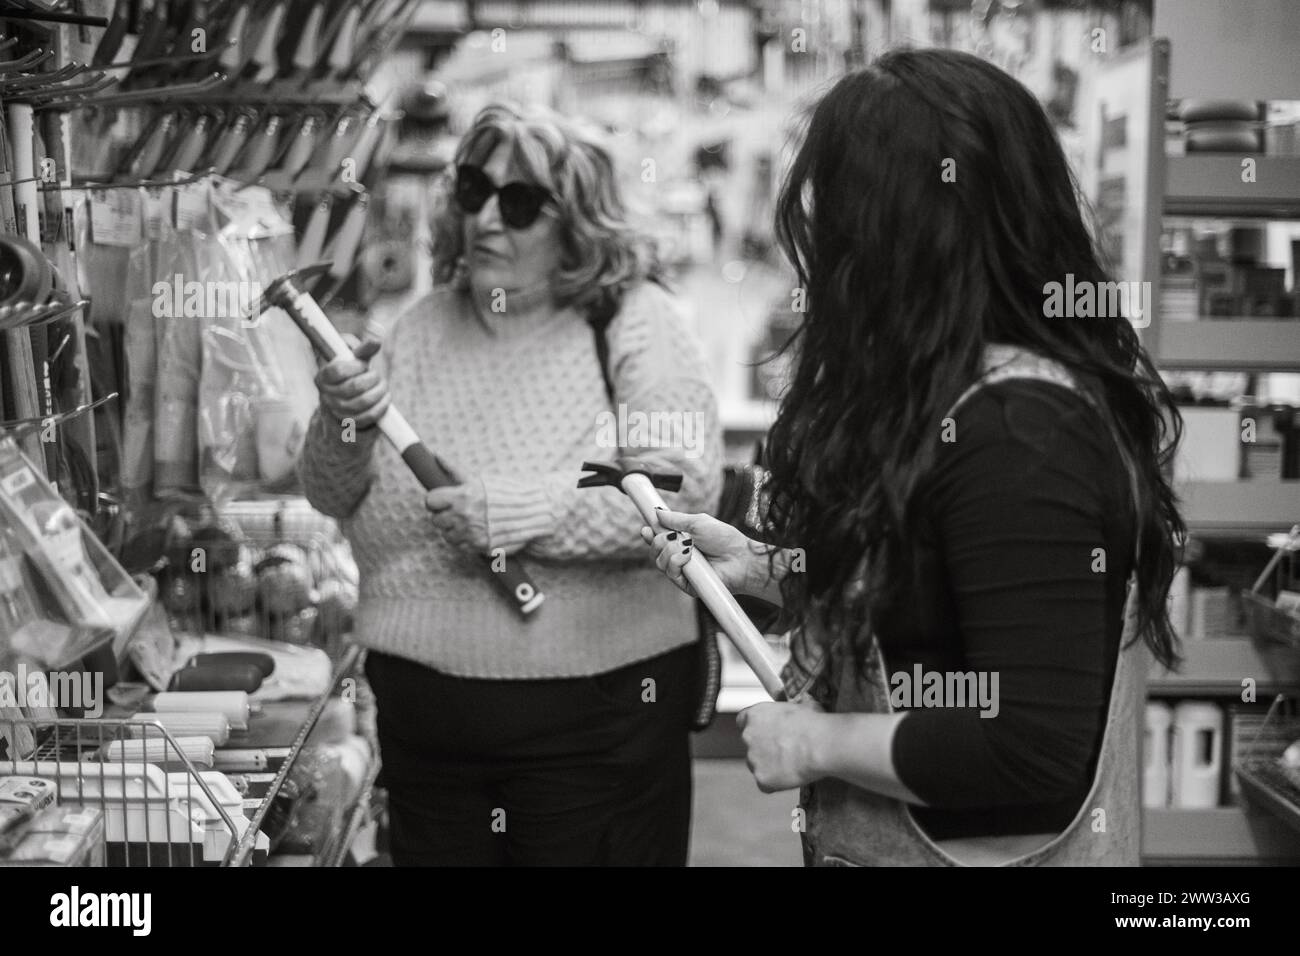 Image monochrome de deux femmes interagissant sur une sélection d'outils dans une quincaillerie Banque D'Images